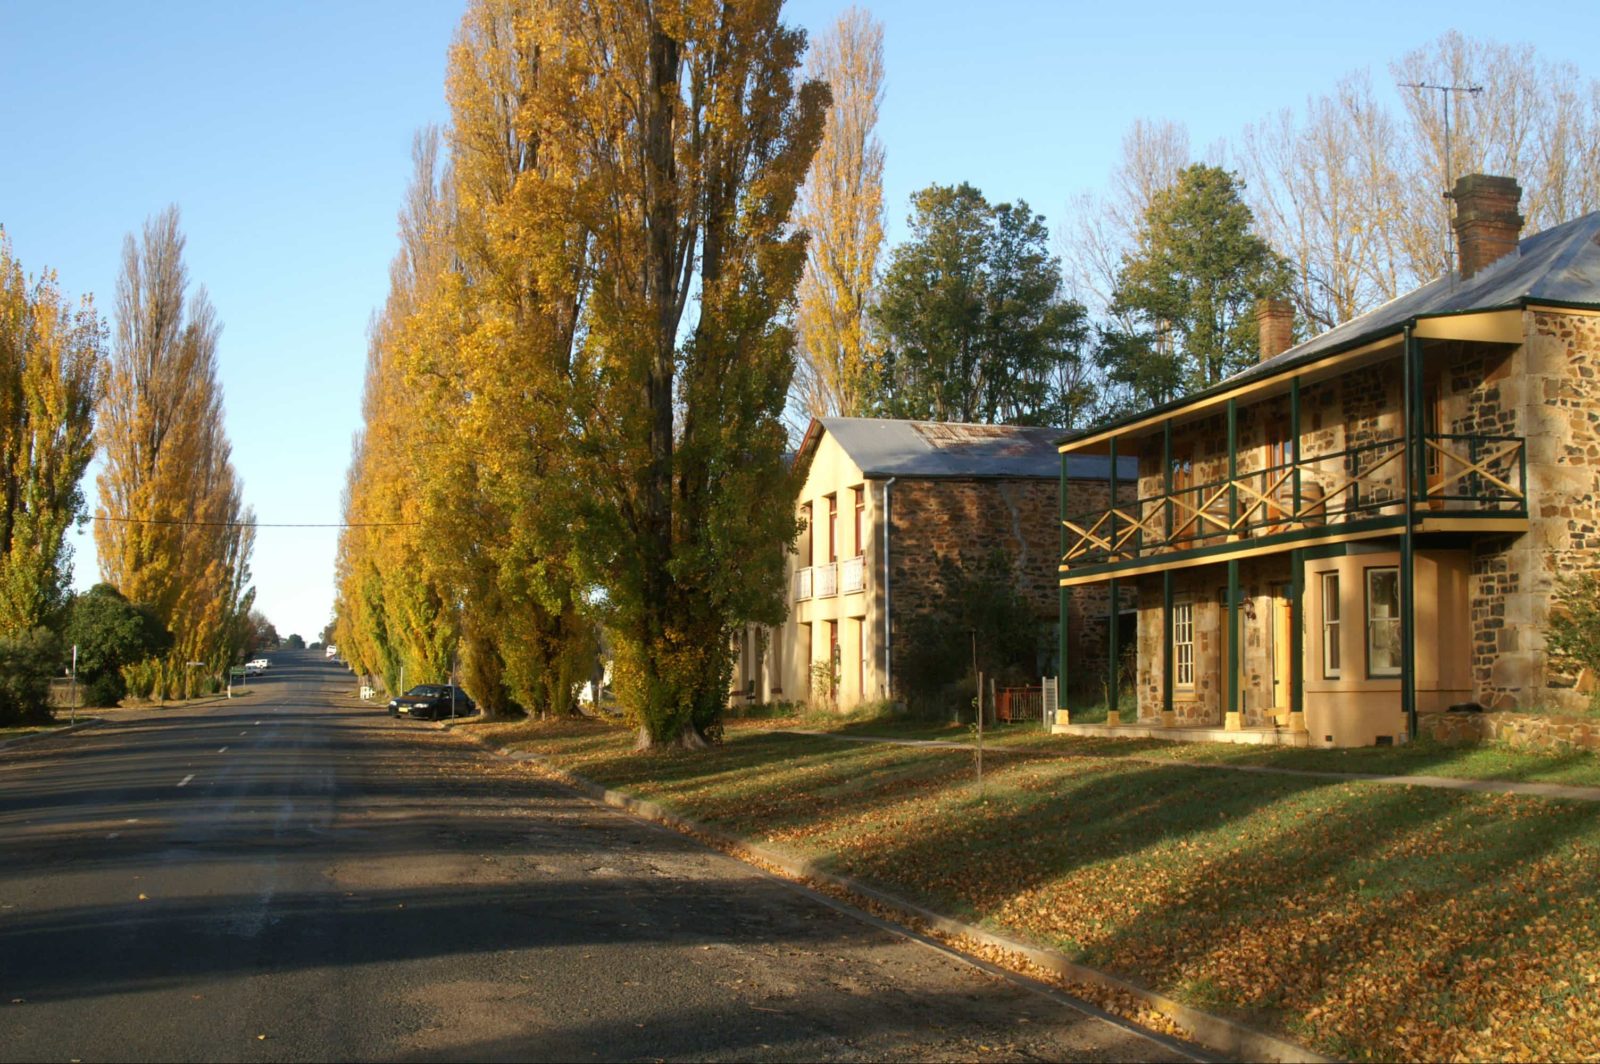 Taralga stone house and road